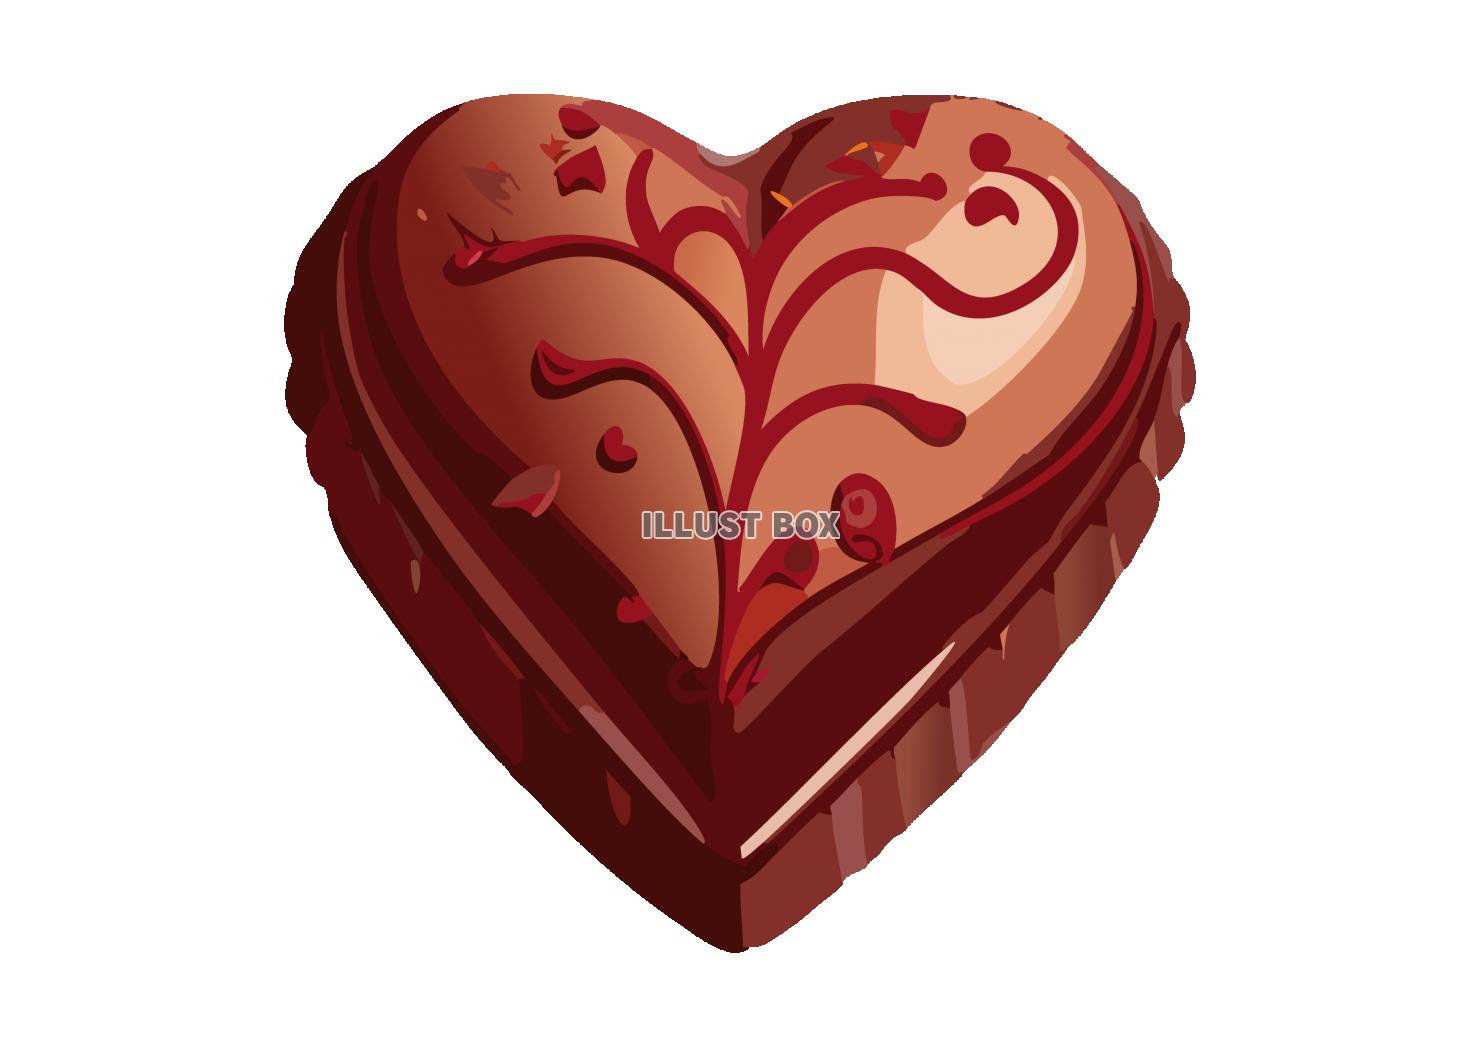 バレンタインのおしゃれなハート型チョコレートのイラスト